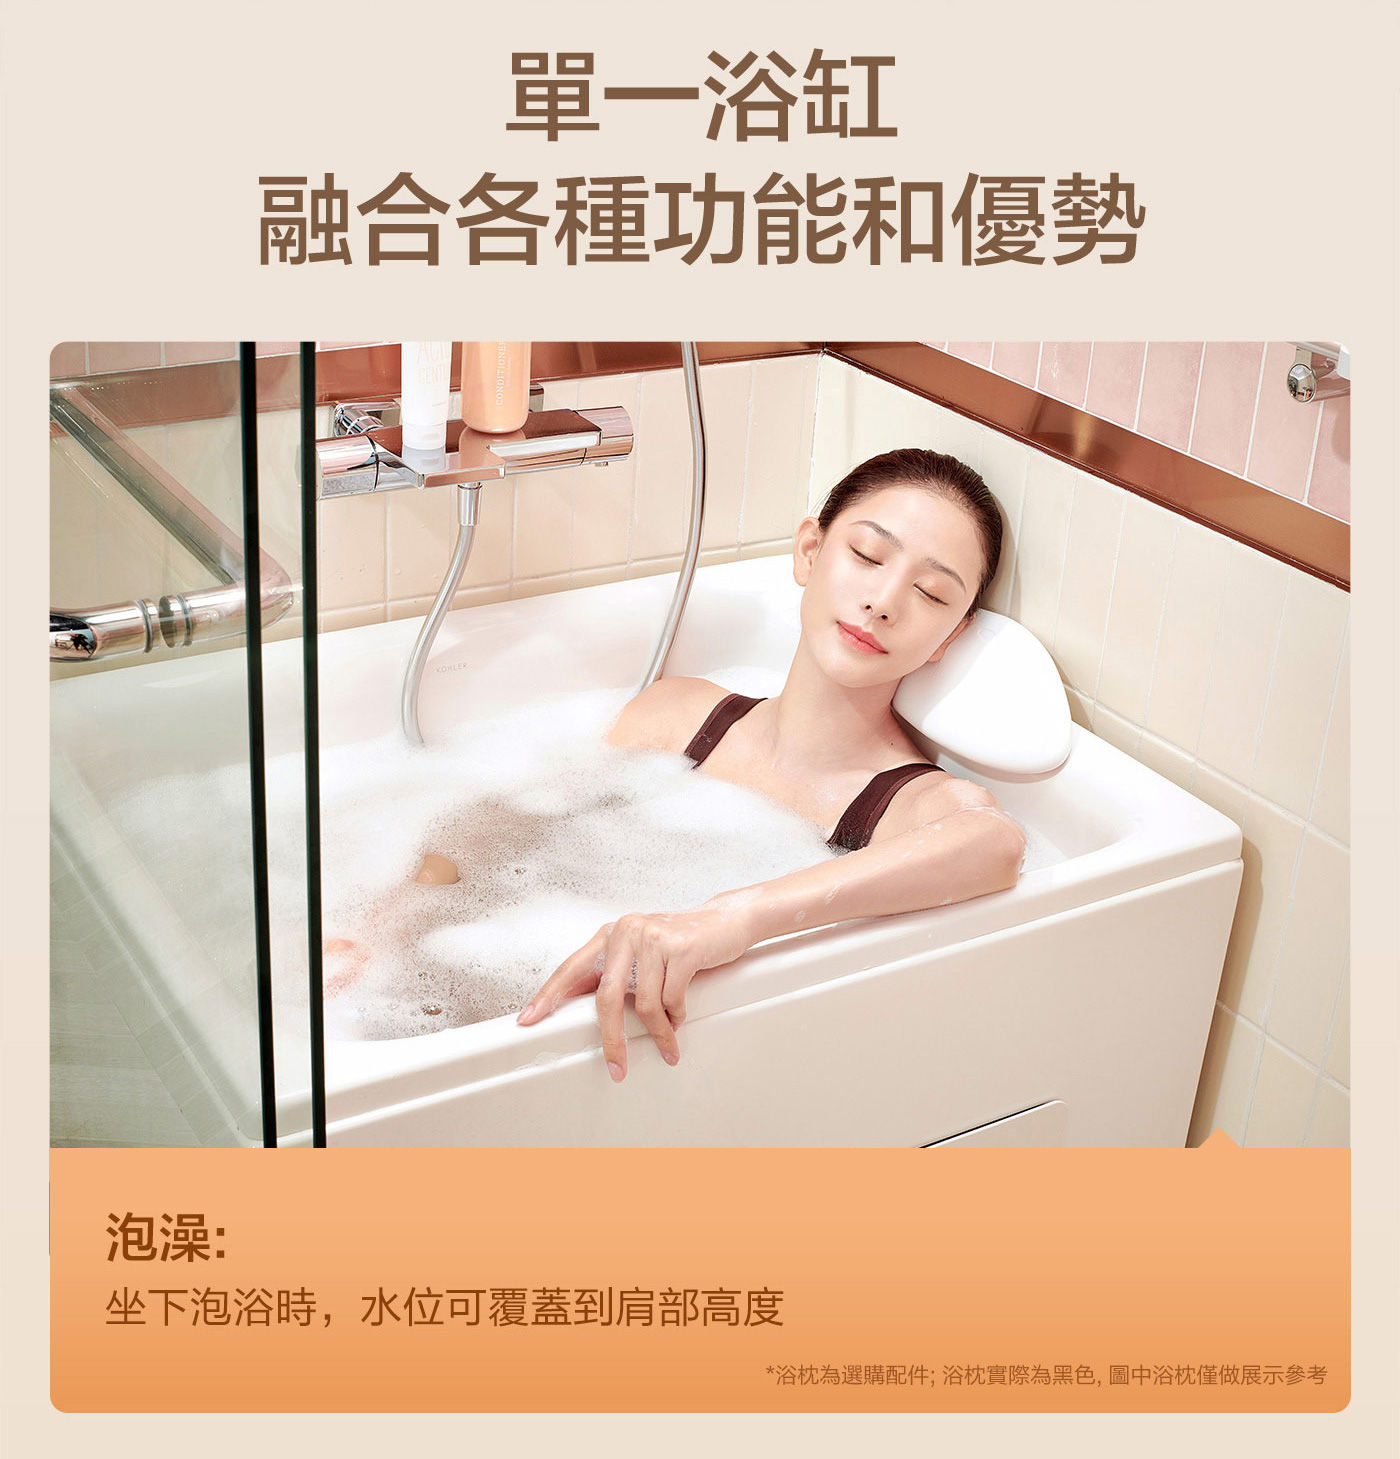 KOHLER 座臥式浴缸右角位 外排水單一浴缸融合各種功能和優勢